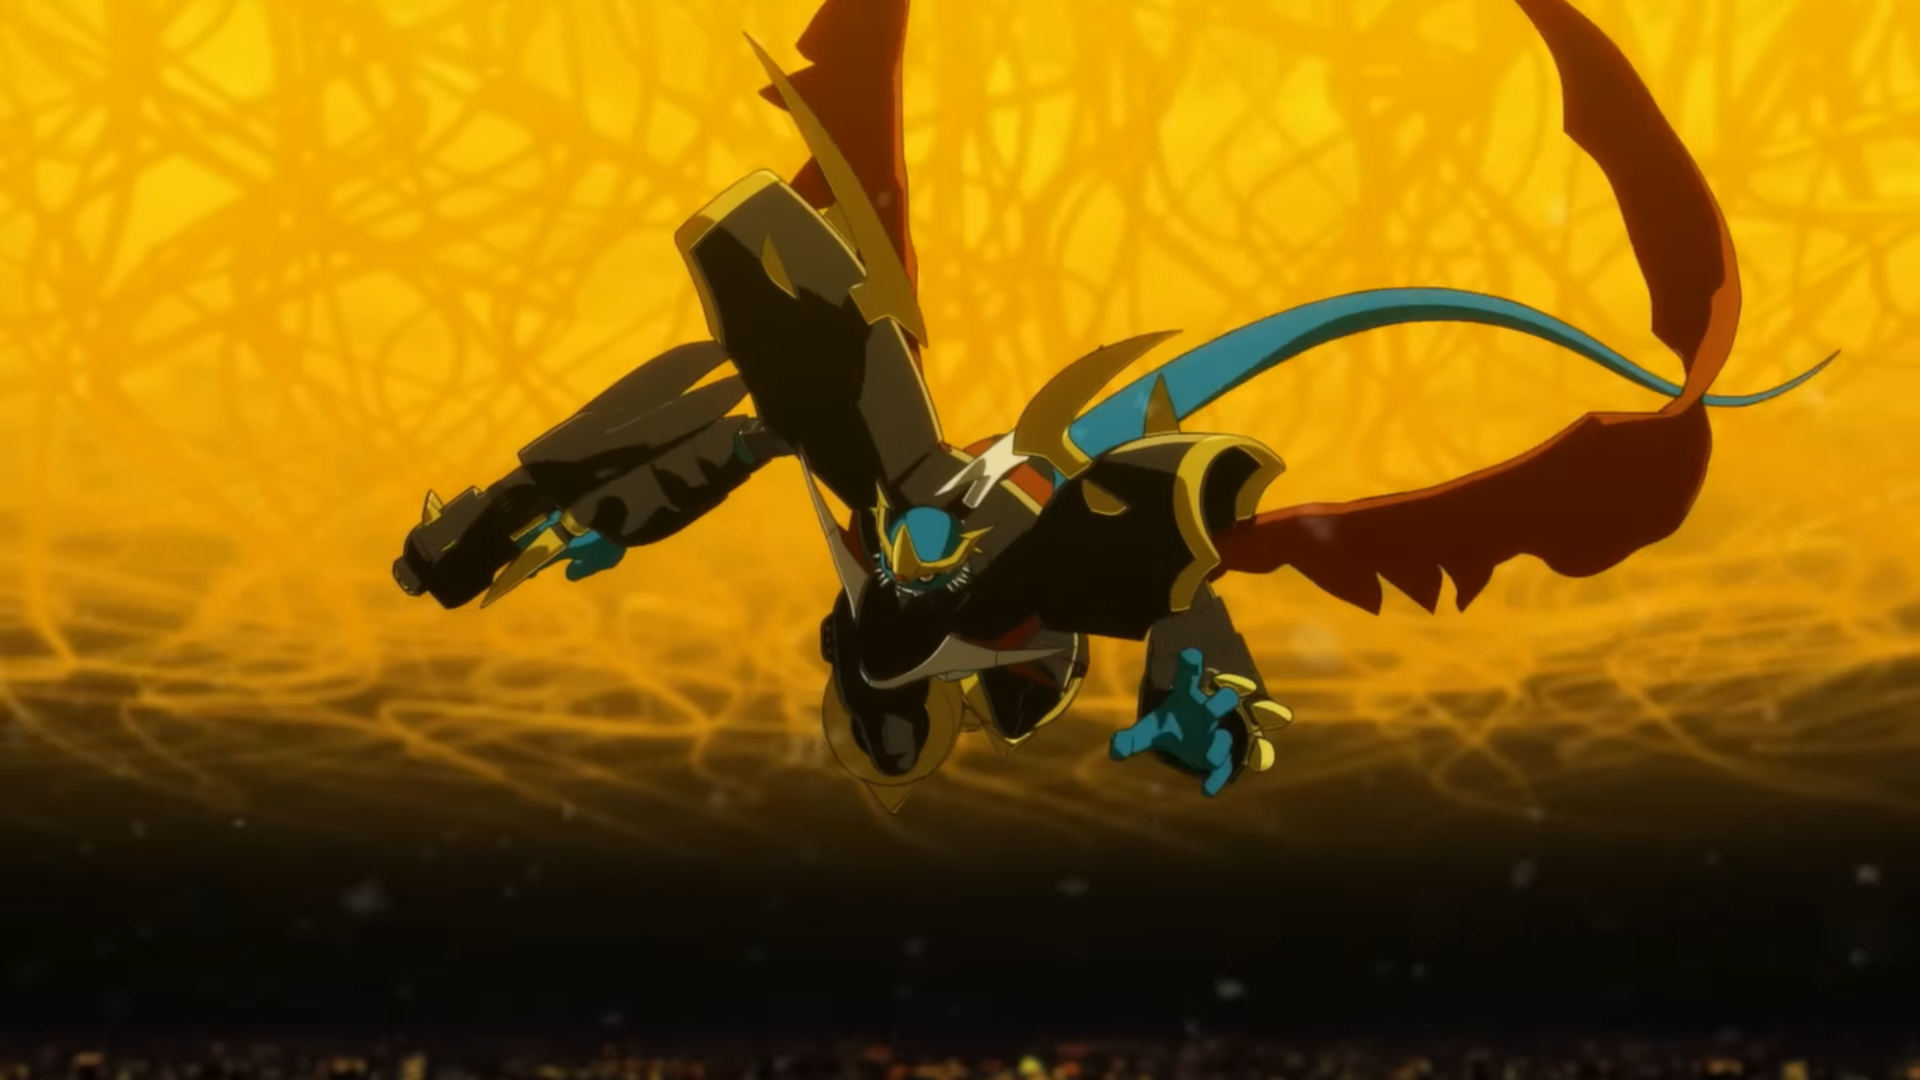 Análise: Digimon Adventure 02 – O Início é mais pessoal do que você imagina  – ANMTV